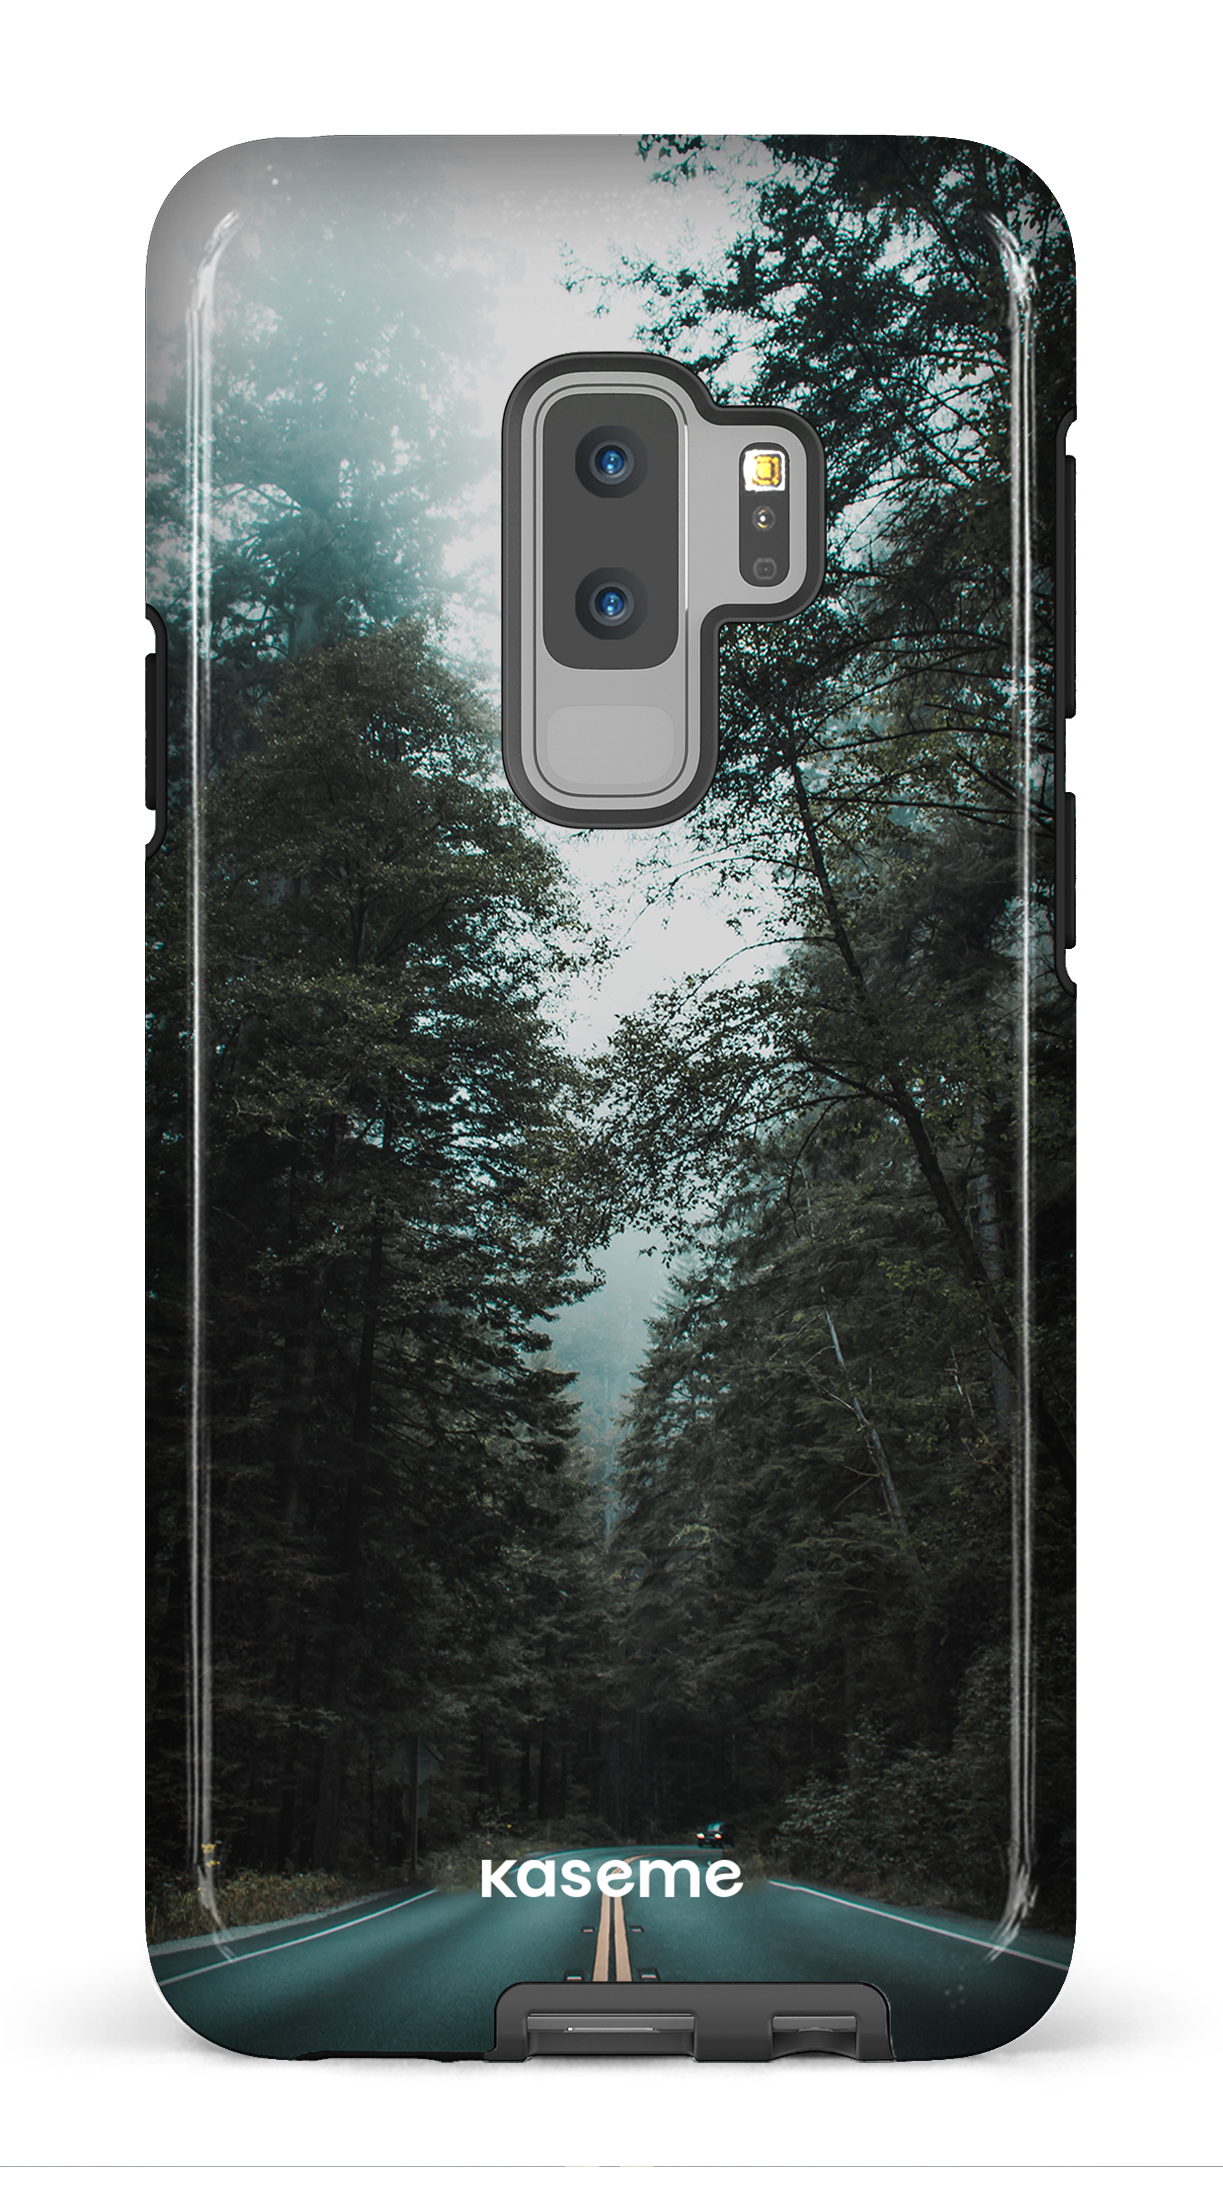 Sequoia - Galaxy S9 Plus